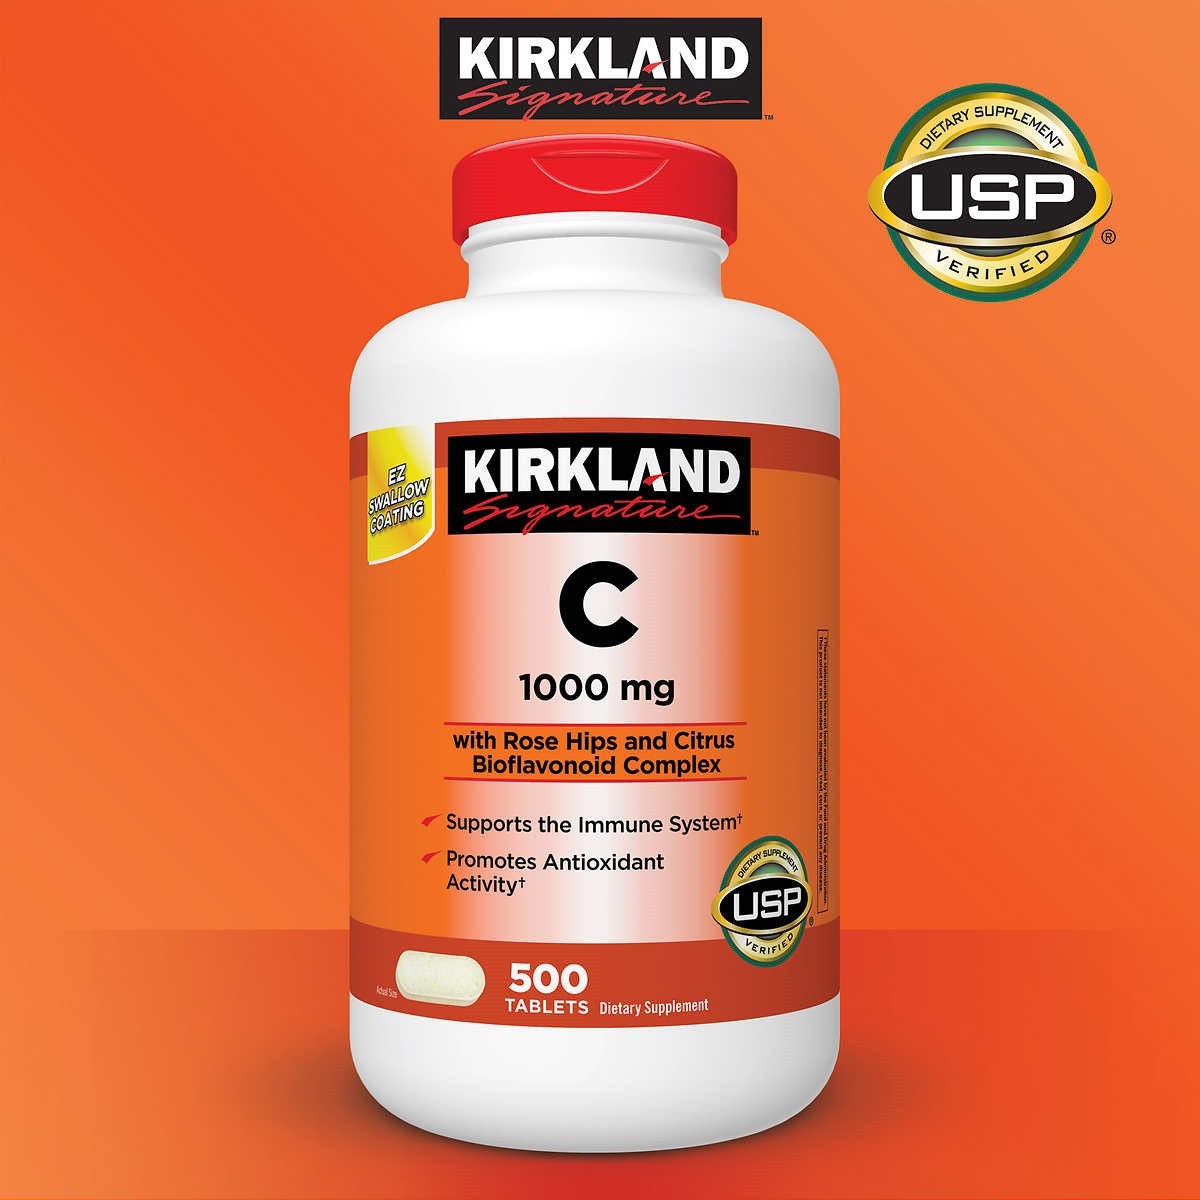 Viên uống Vitamin C Kirkland được đóng gói trong lọ chắc chắn, nắp có màu đỏ